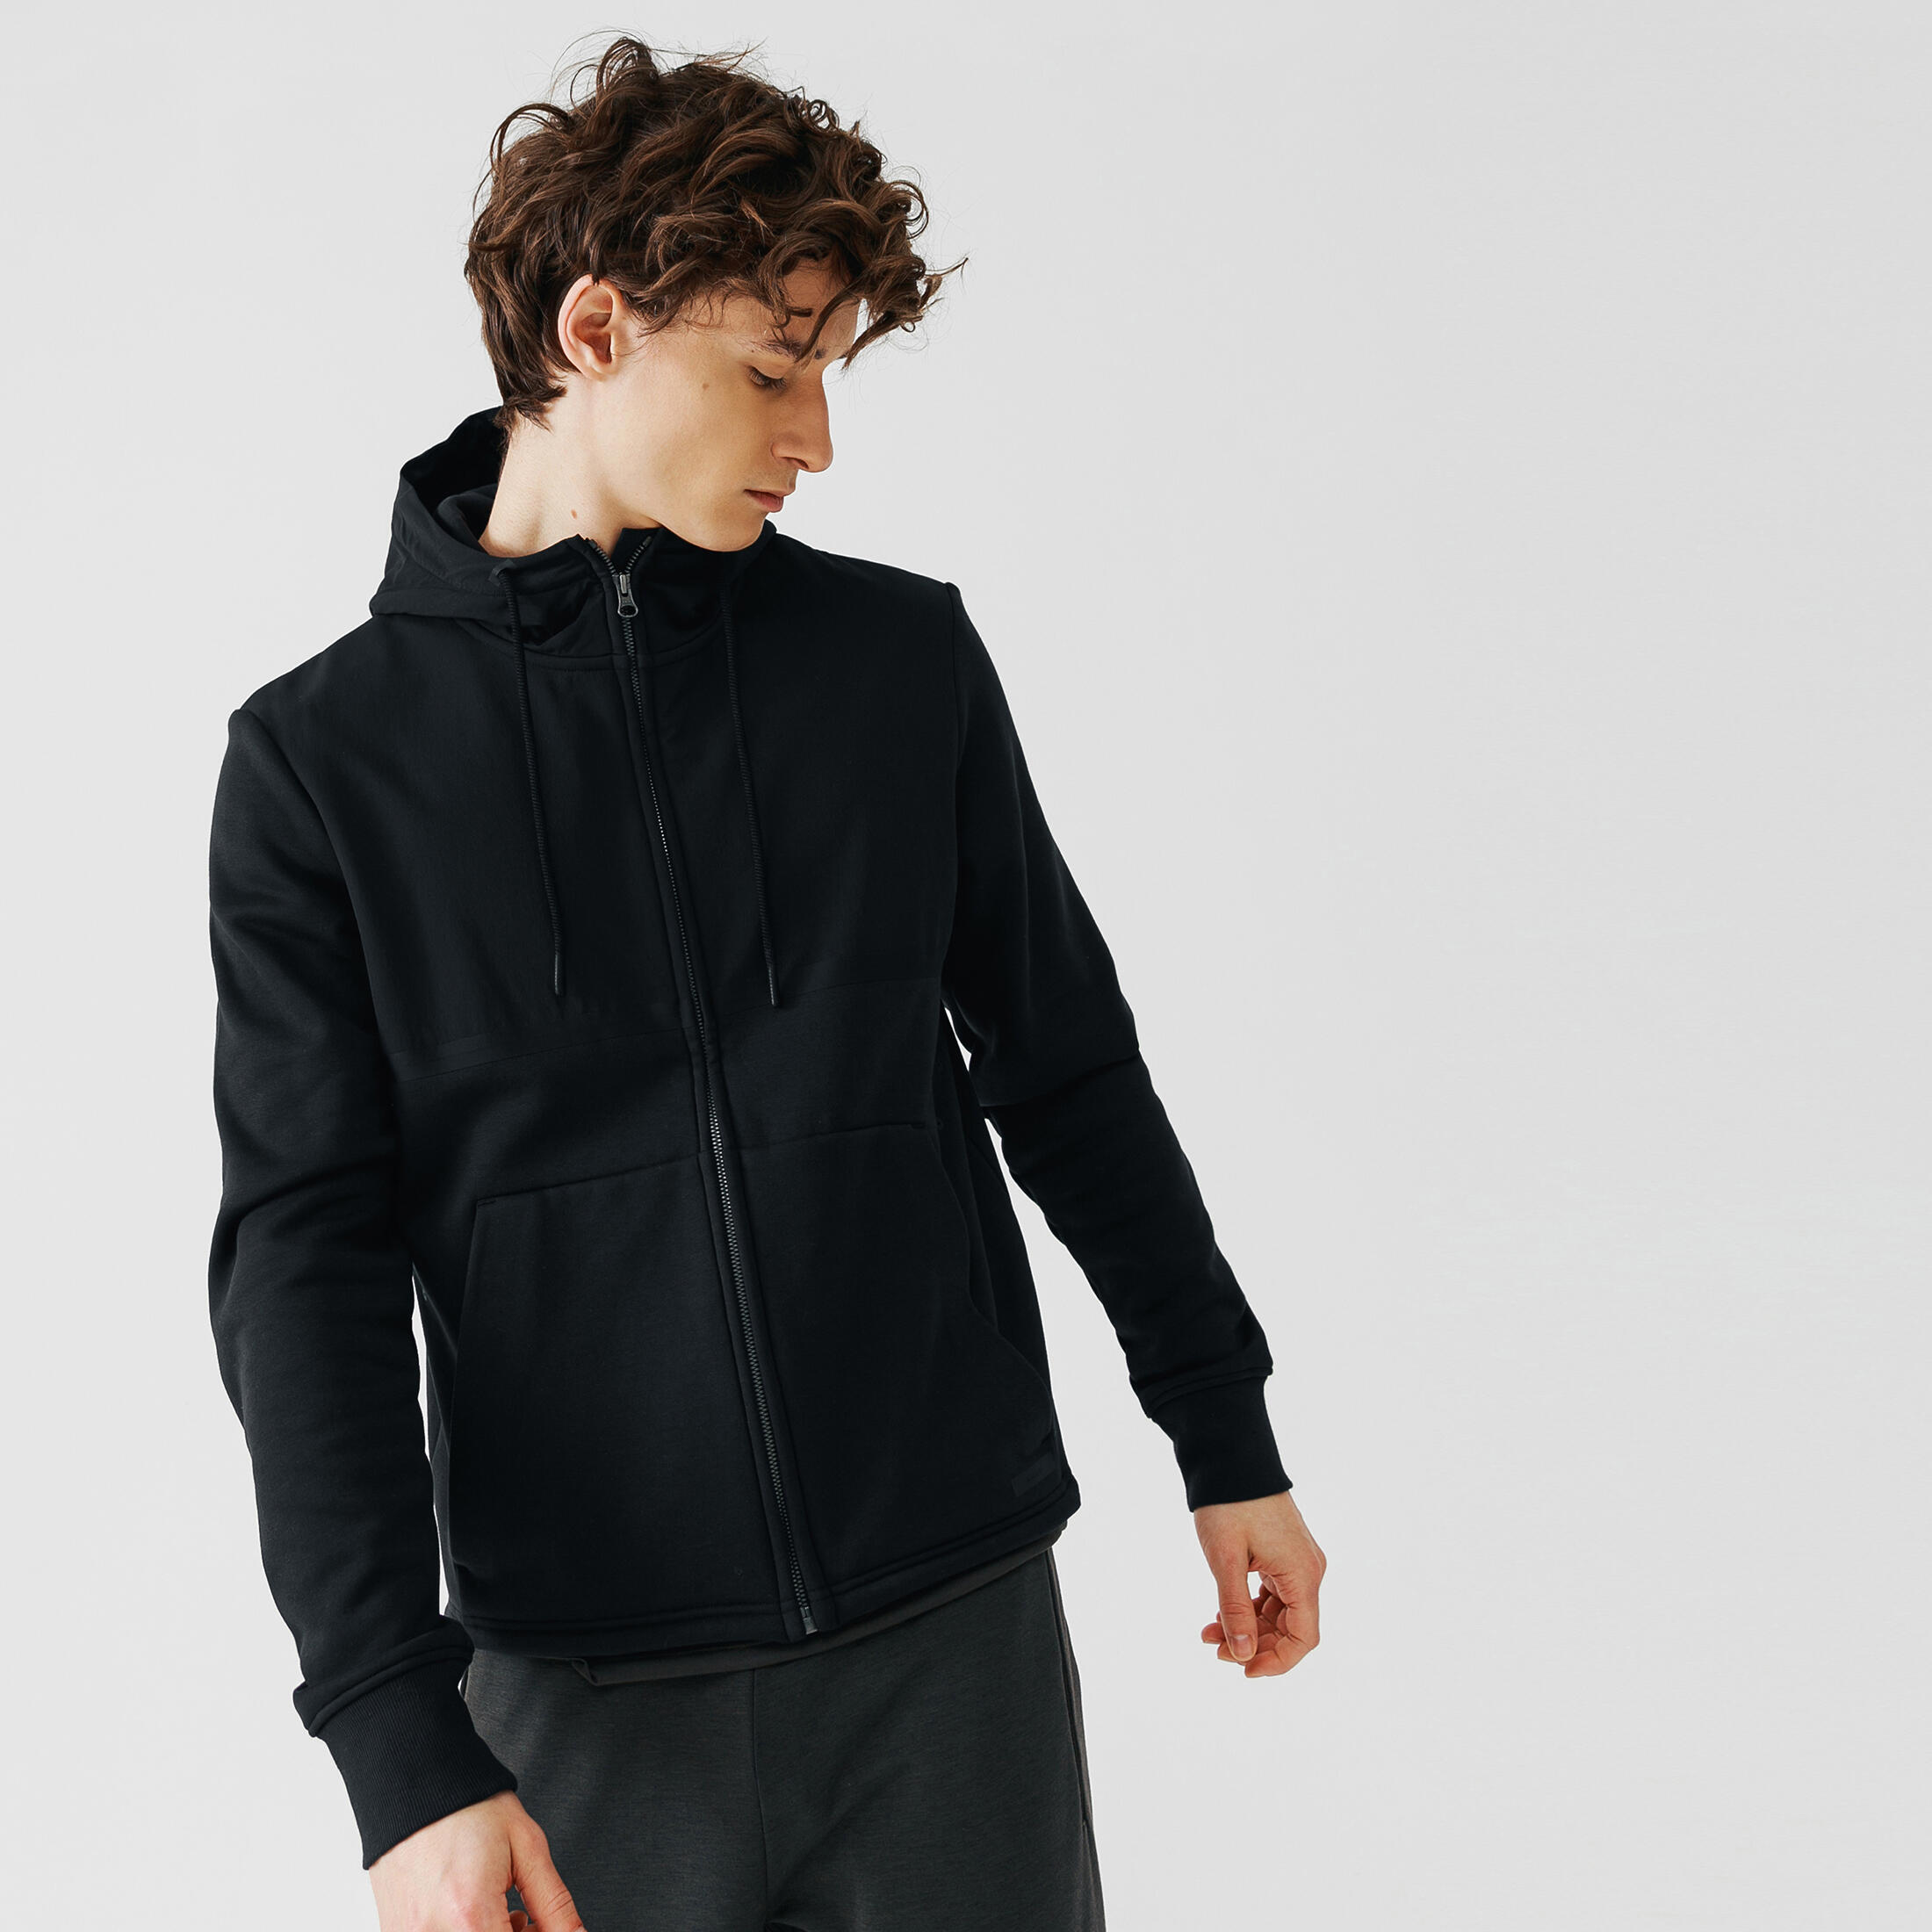 Men's hooded running jacket - Warm+ - Black 1/13